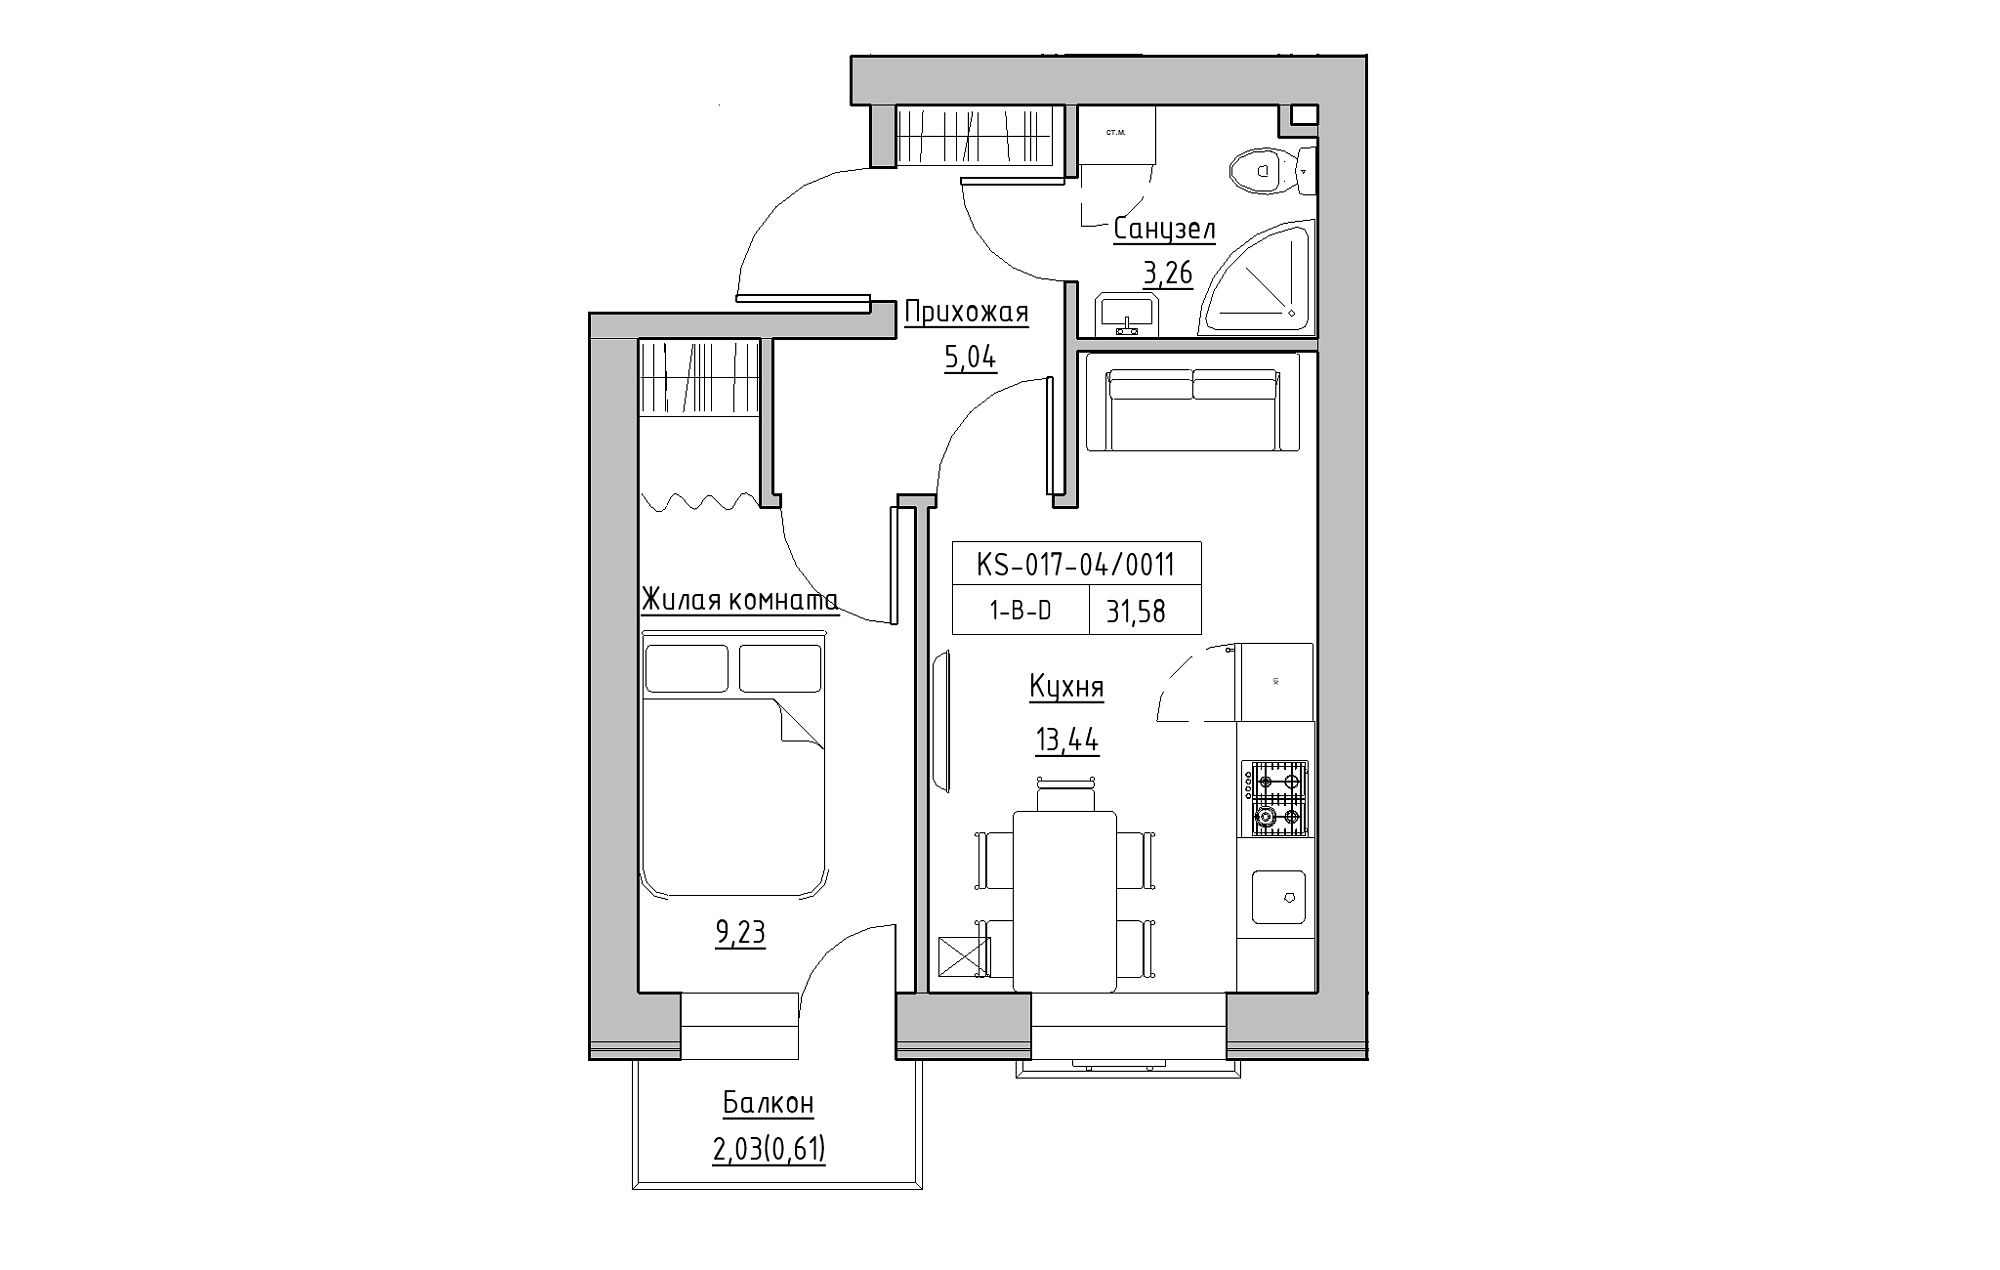 Планування 1-к квартира площею 31.58м2, KS-017-04/0011.